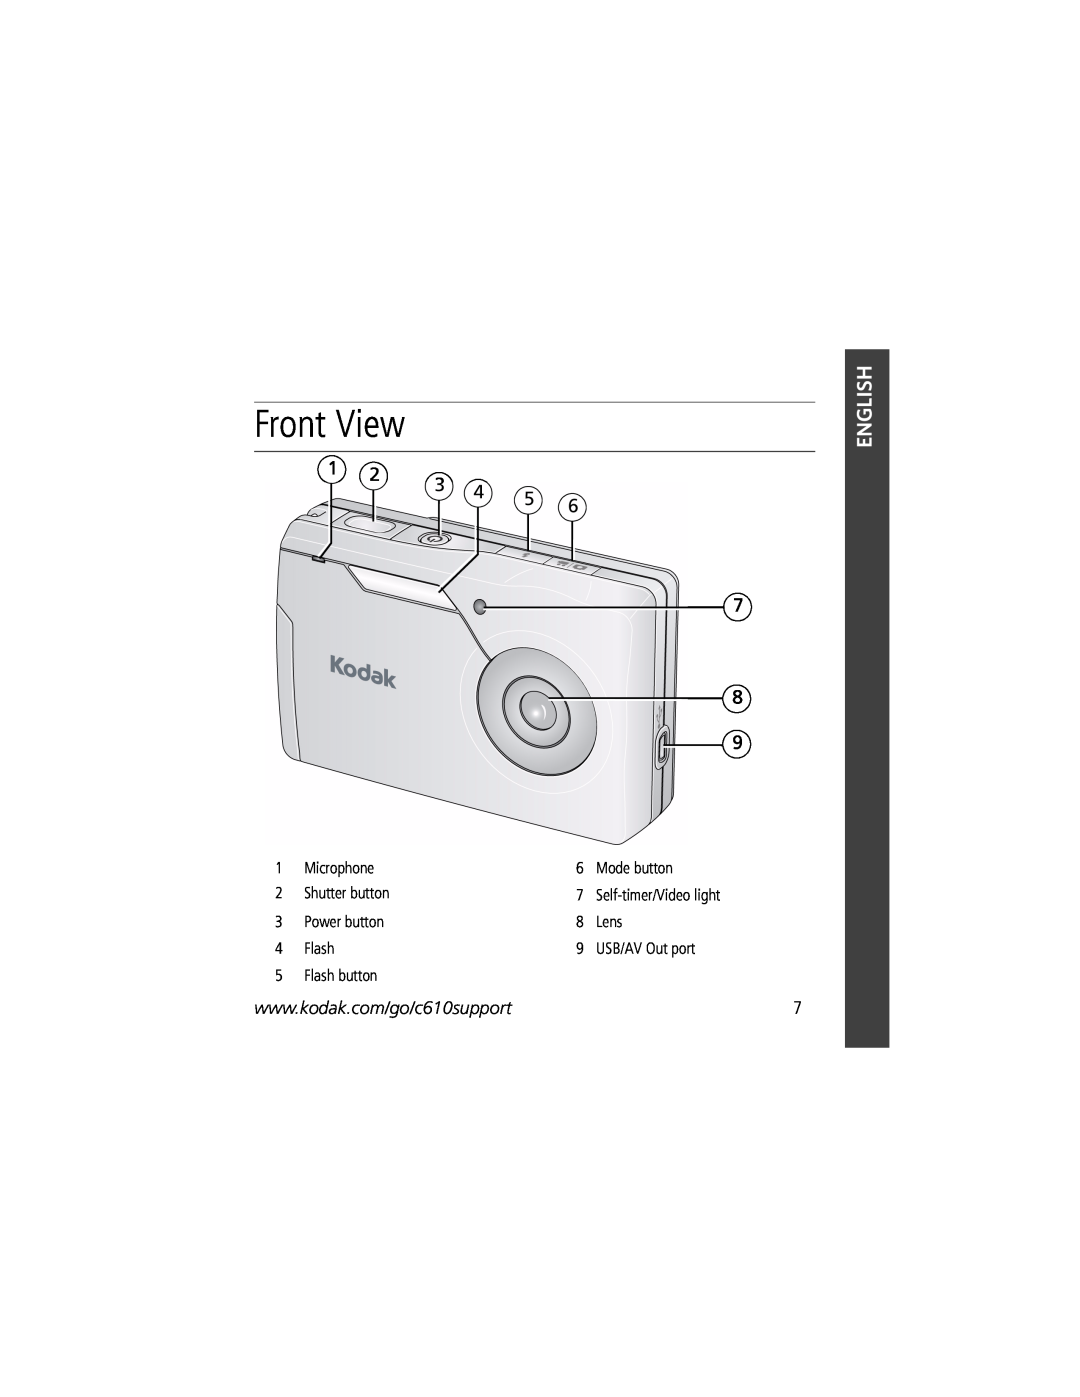 Kodak C610 Front View, Microphone, Mode button, Shutter button, Power button, Lens, USB/AV Out port, Flash button 